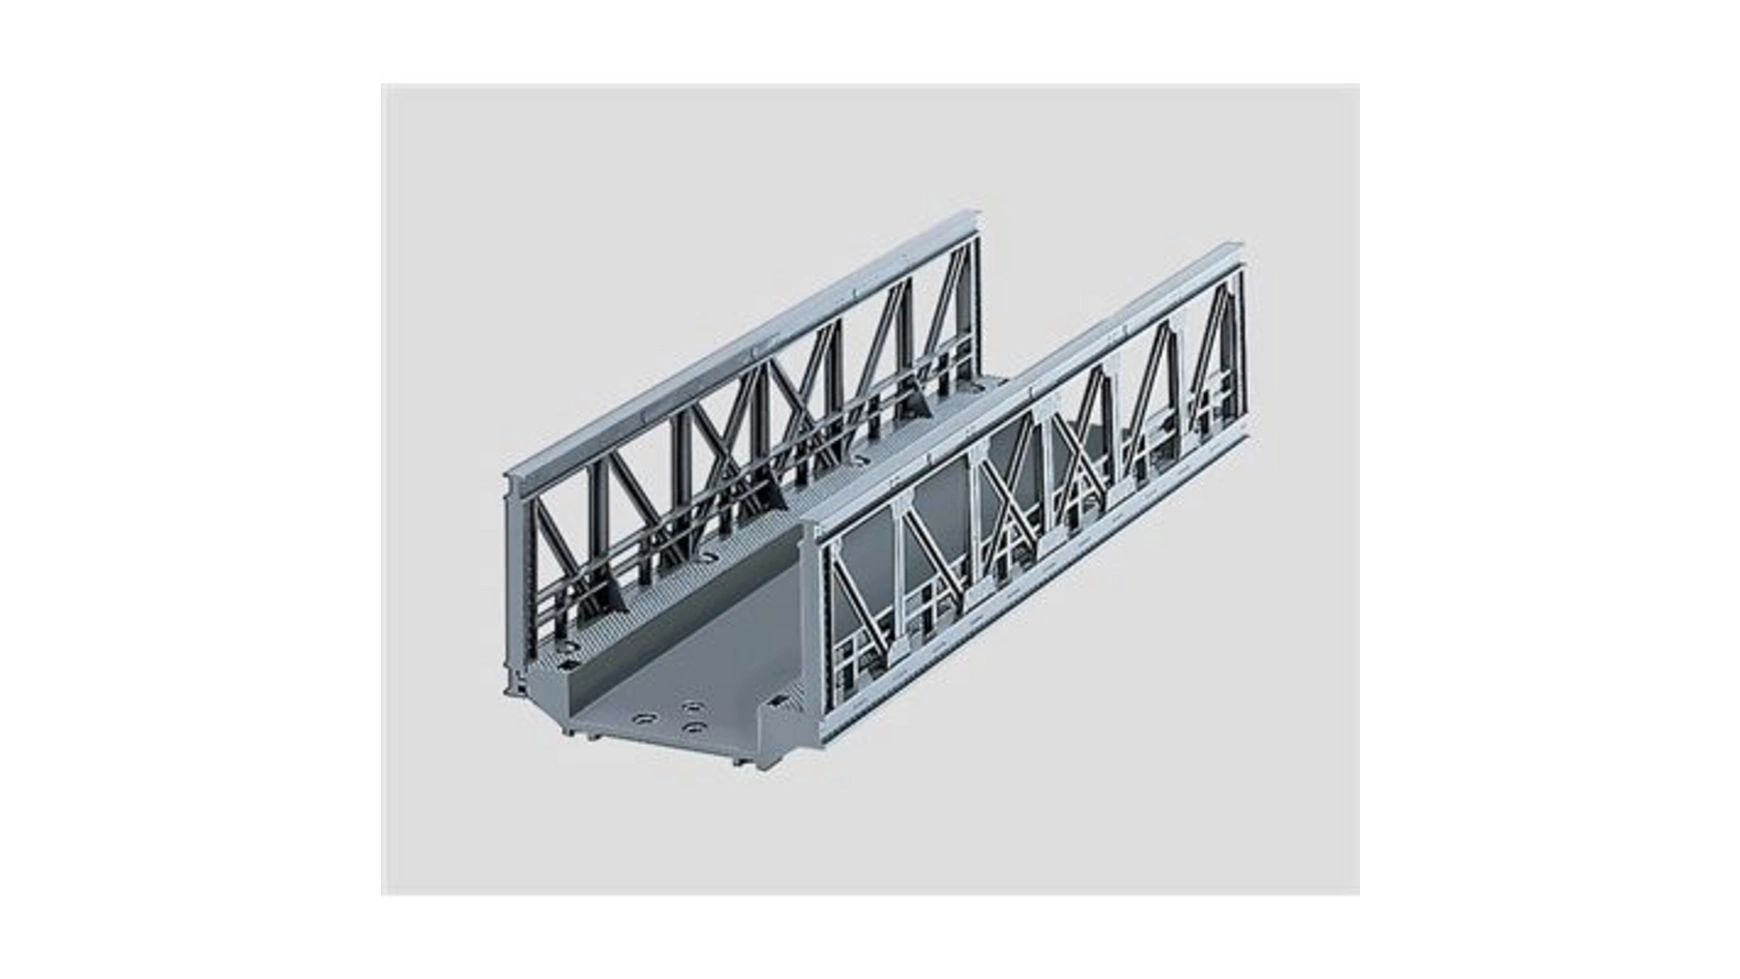 Мосты решетчатый мост 180 мм Märklin жарков станислав shareware професс разработка и продвижение програ